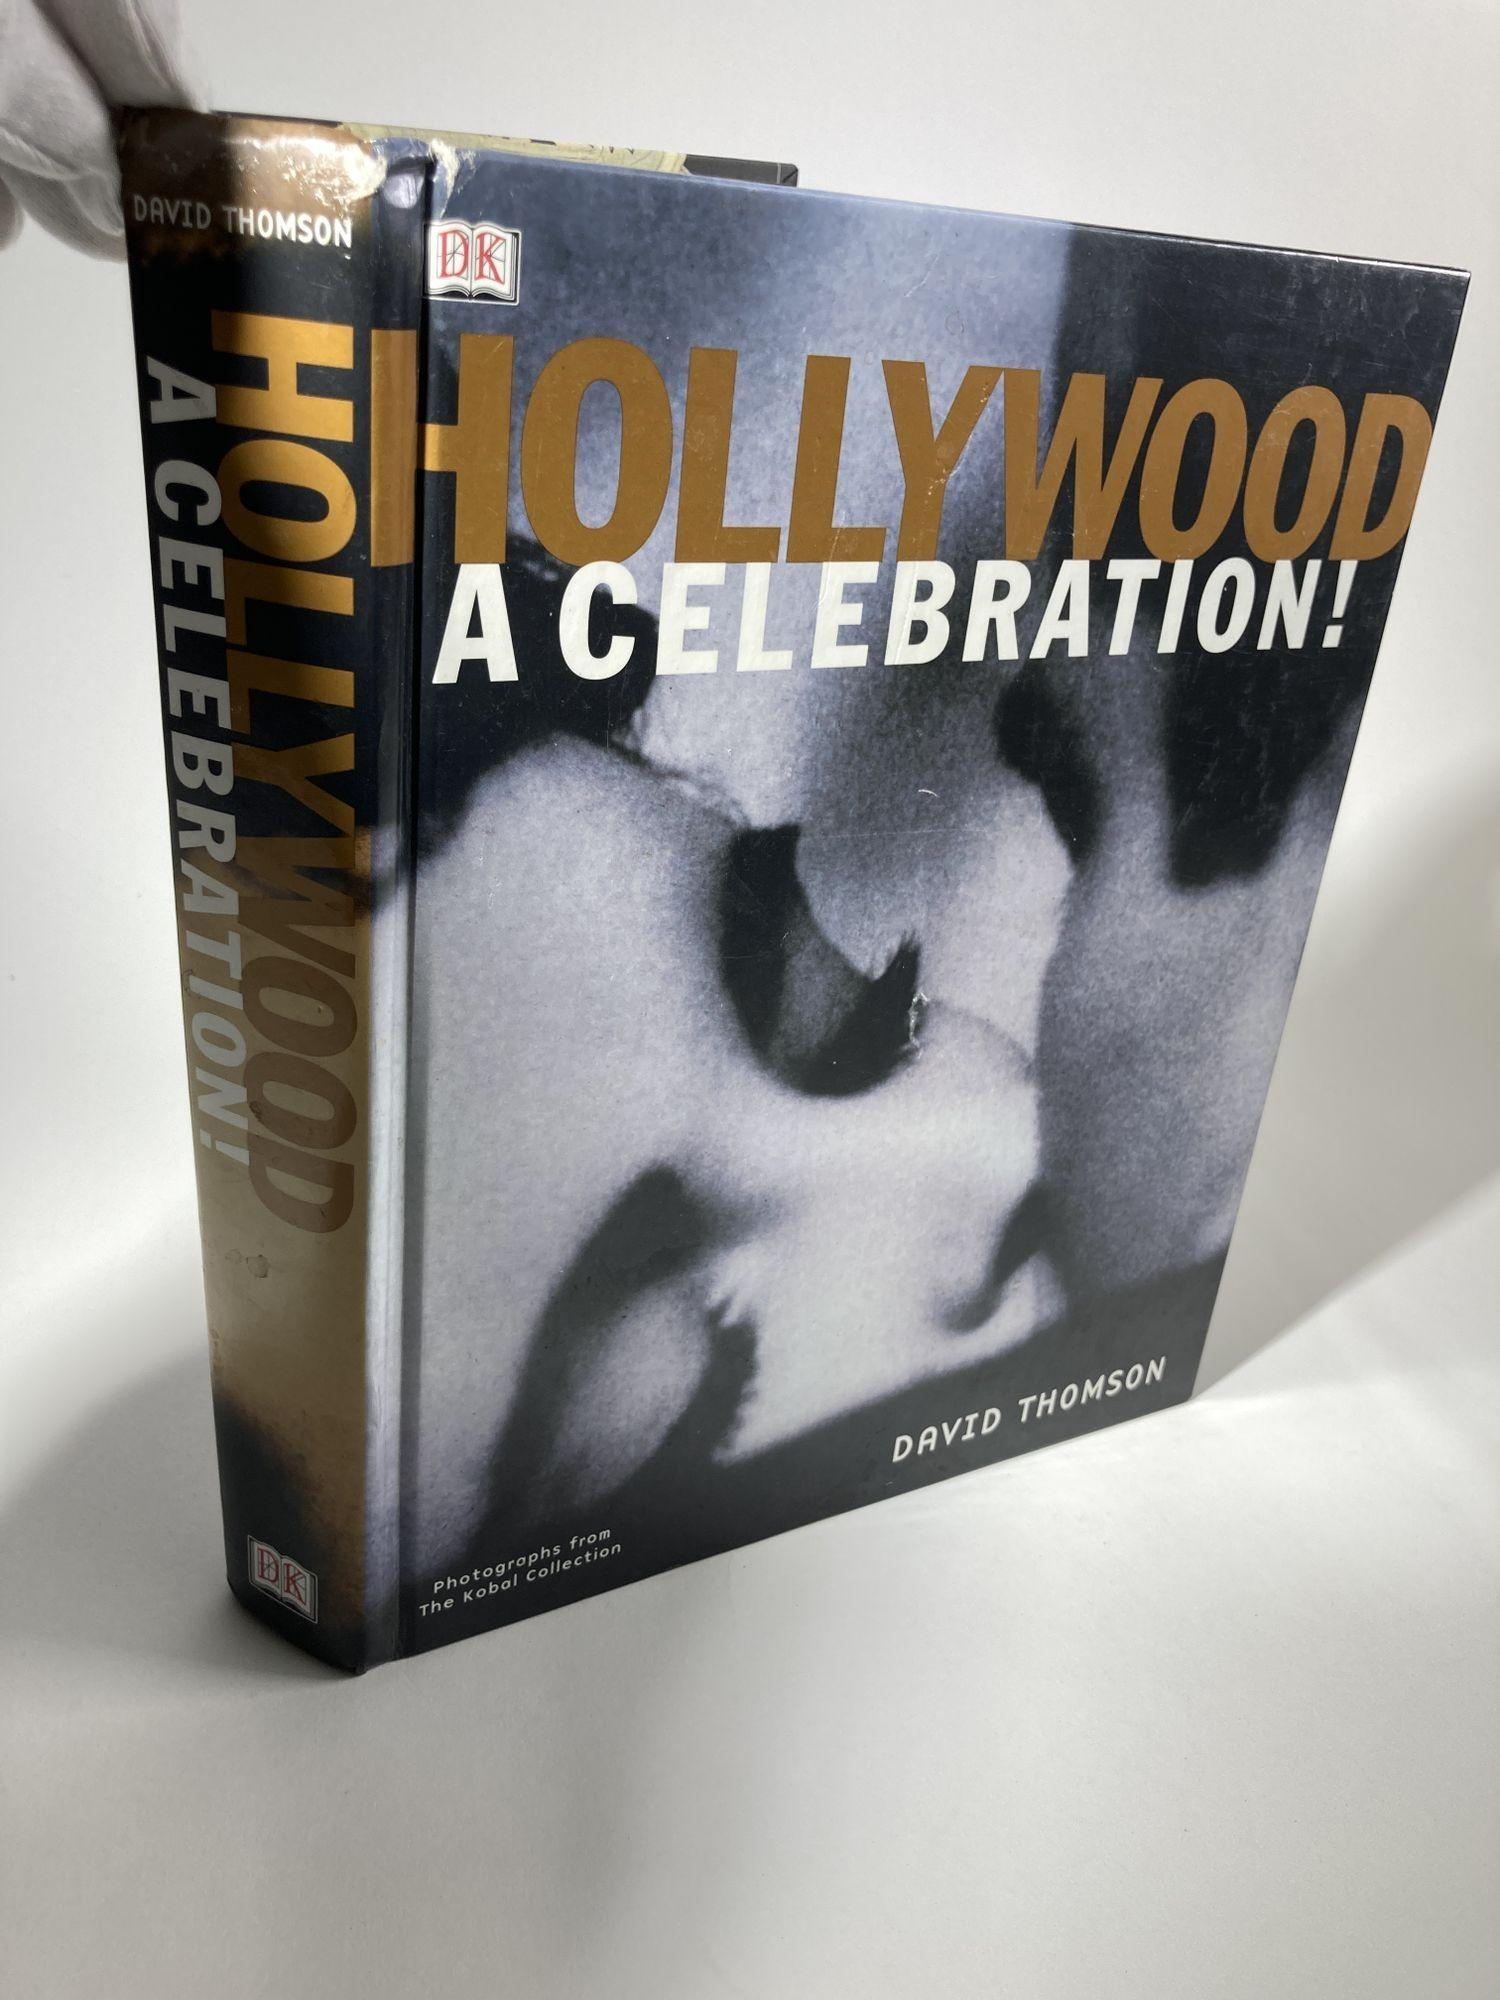 Hollywood : A Celebration par David Thomson DK Pub., 2001 - Arts du spectacle - 640 pages.
De la naissance de l'industrie cinématographique dans le village poussiéreux d'Hollywood en 1905 aux extravagances d'effets spéciaux générés par ordinateur